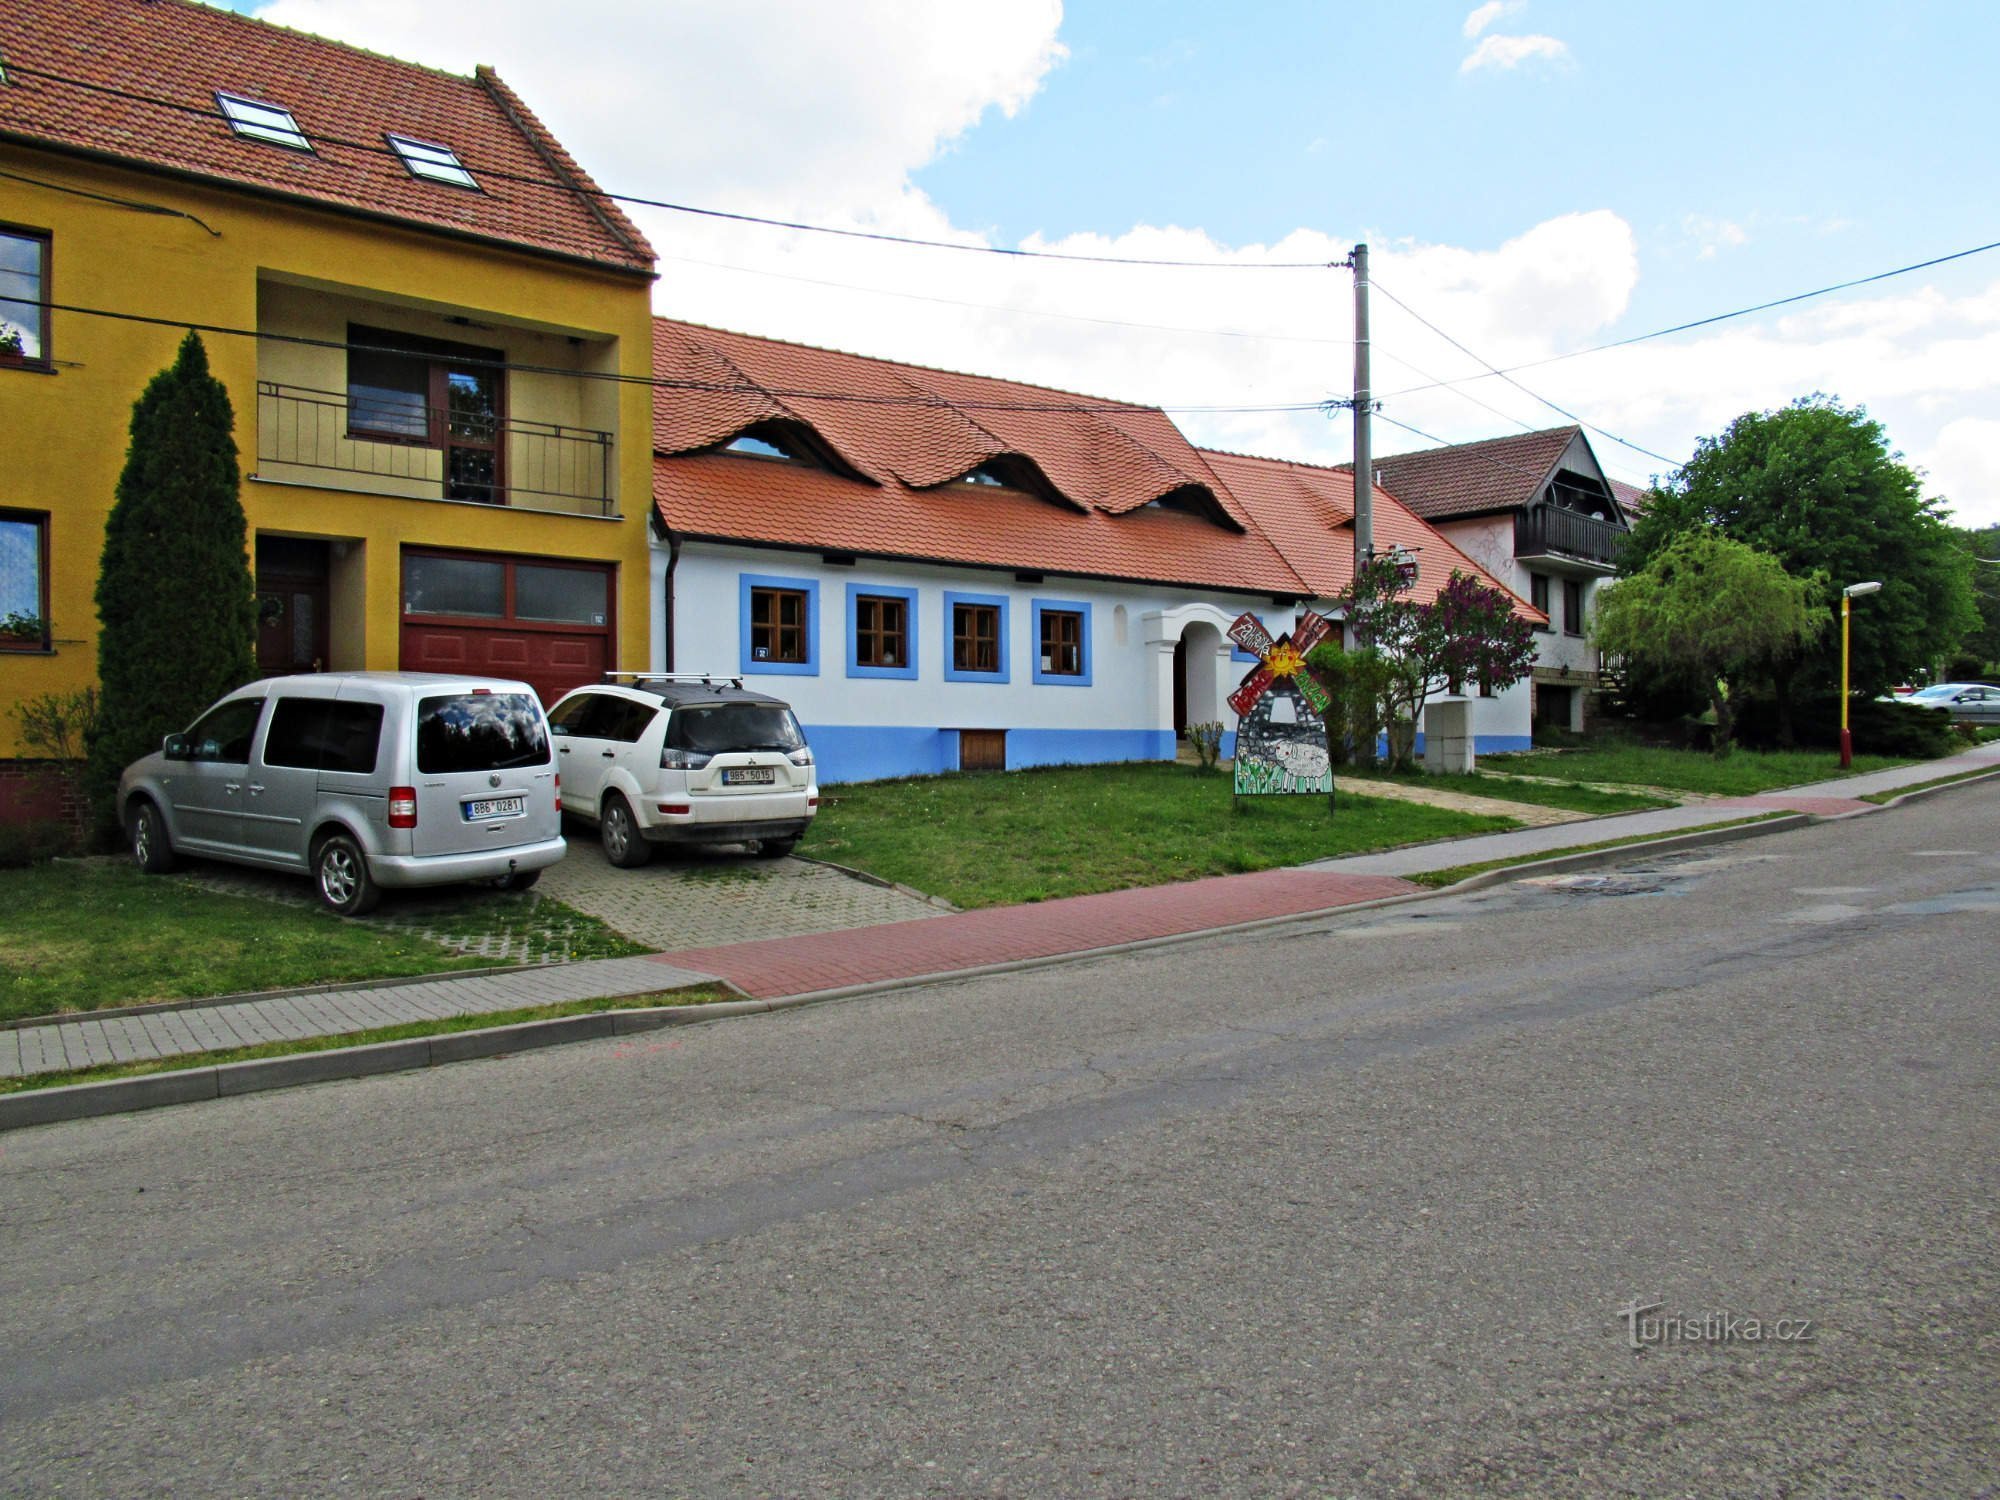 Pensión U větrného mlýna en el pueblo de Kuželov en Slovácko